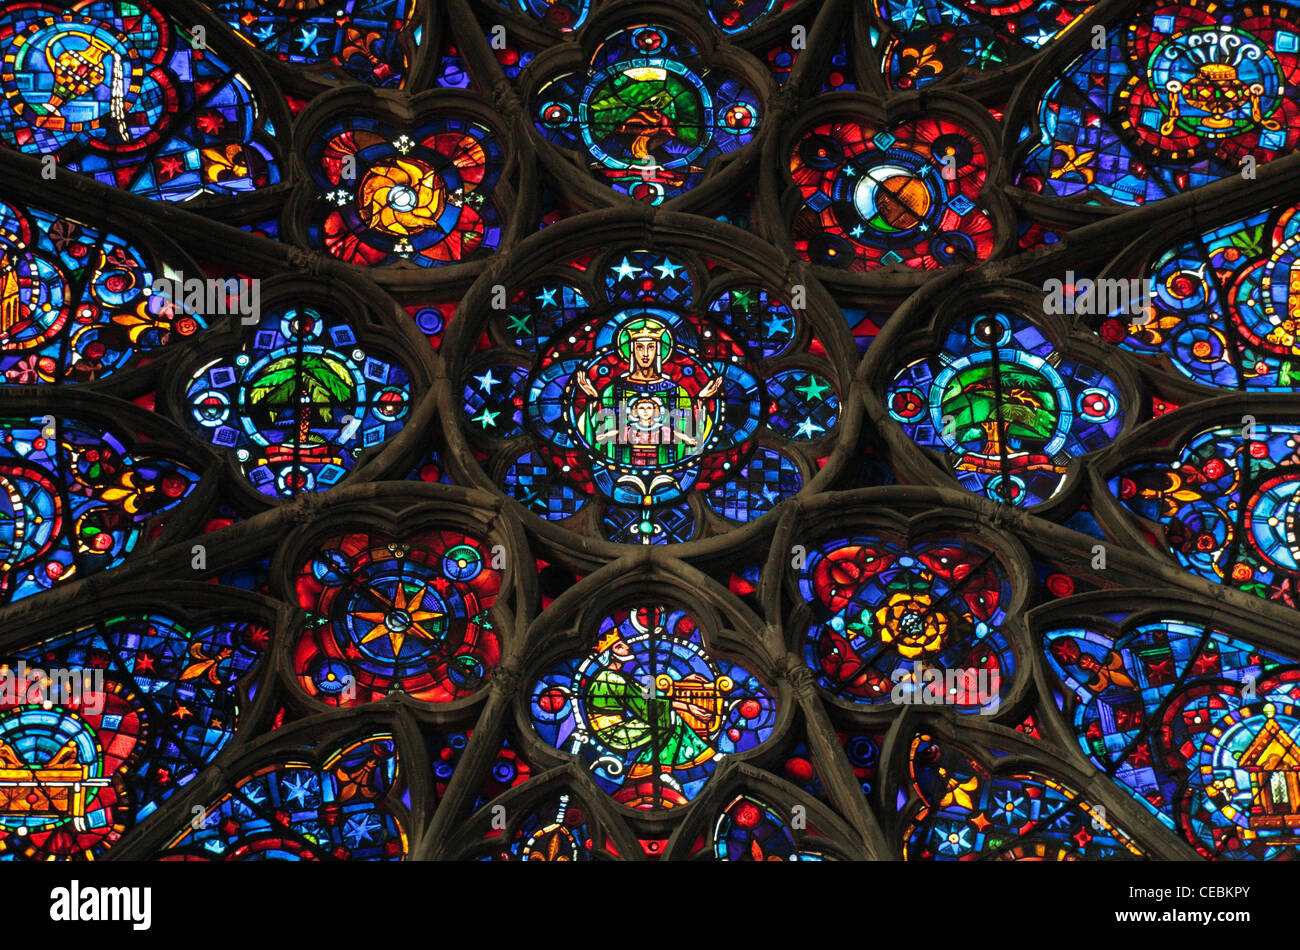 Un vitrail dans la Cathédrale Notre Dame, Reims, France. (Notre-Dame de Reims (Notre Dame de Reims)). Banque D'Images